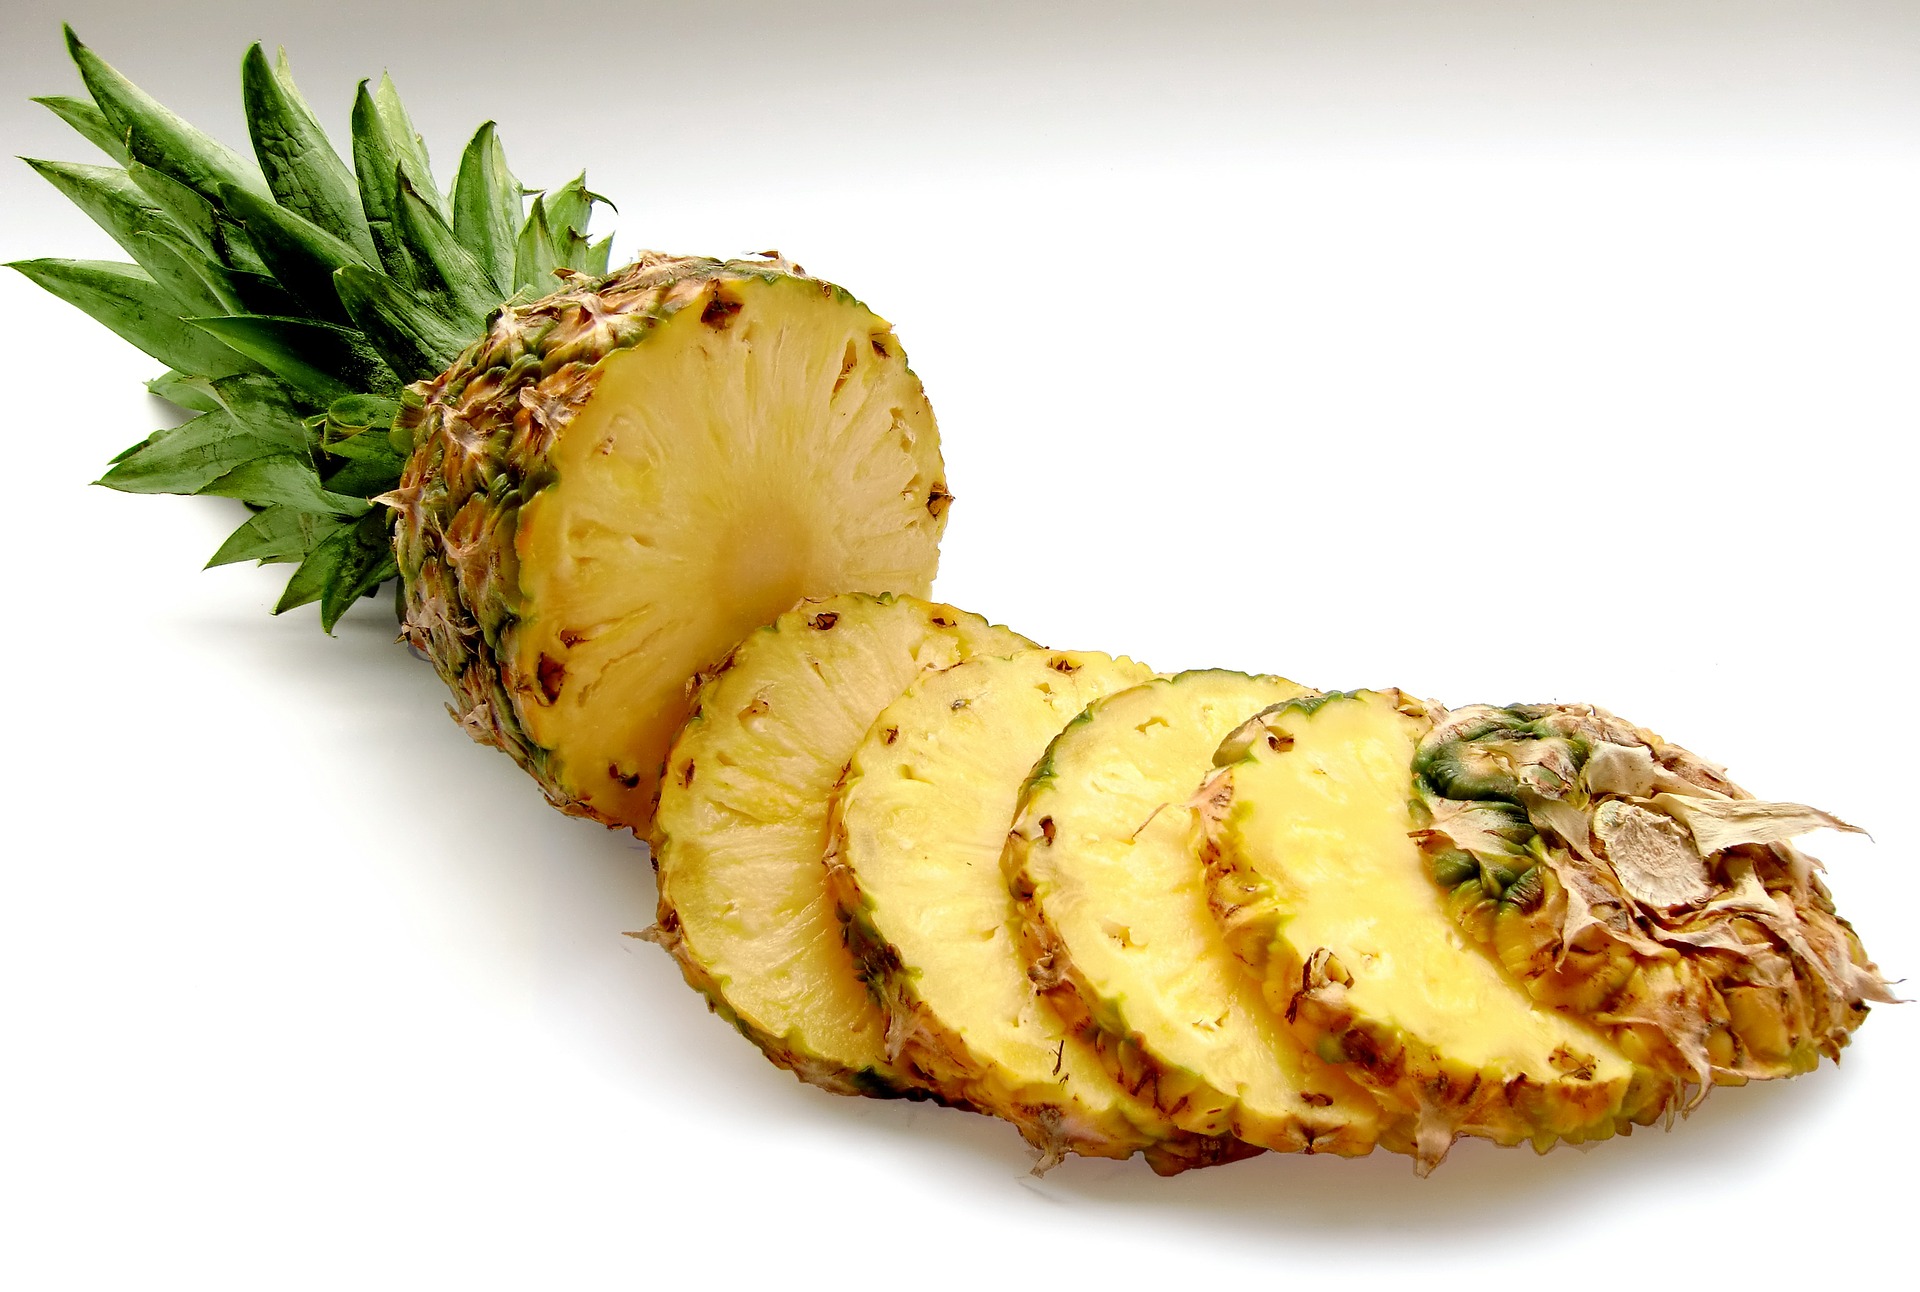 δίαιτα για απώλεια βάρους με ανανά)